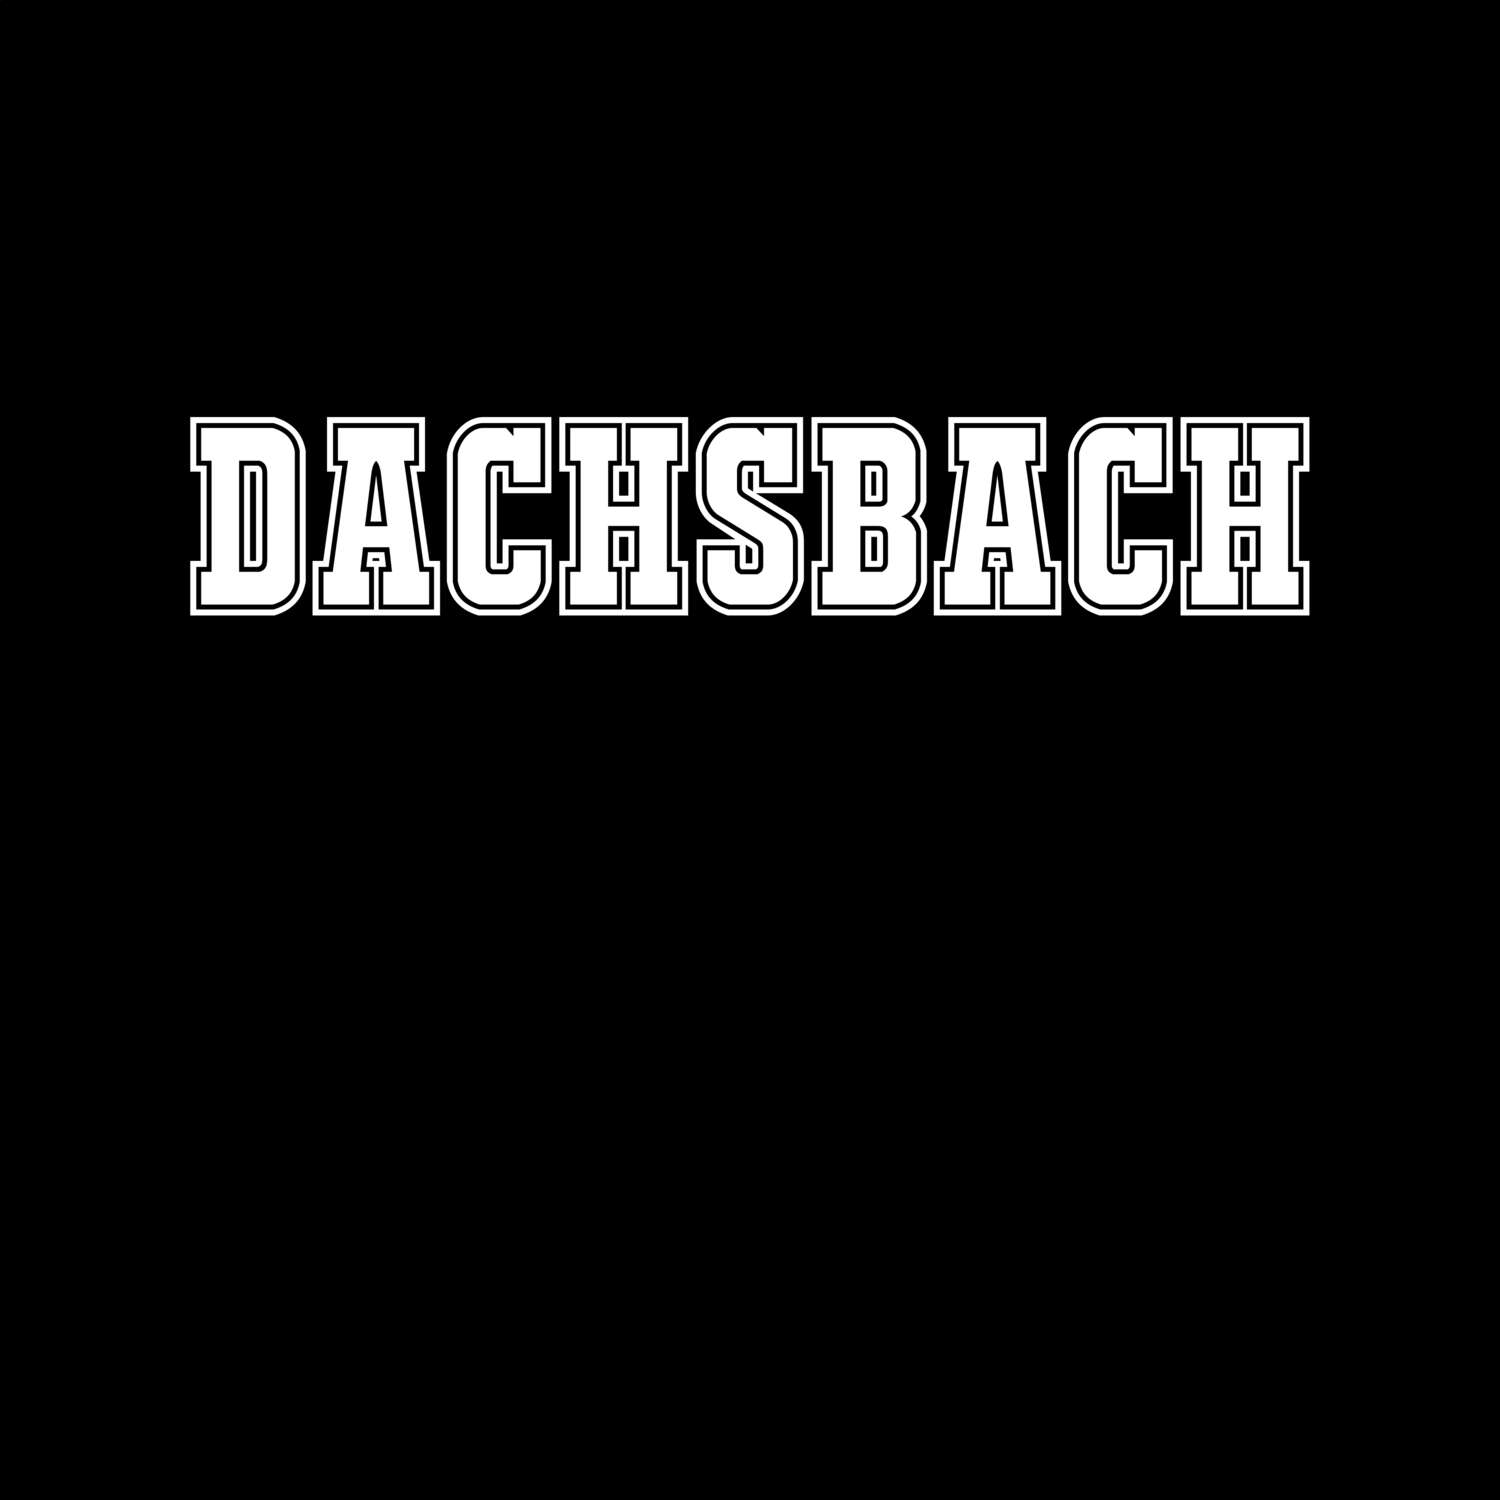 Dachsbach T-Shirt »Classic«